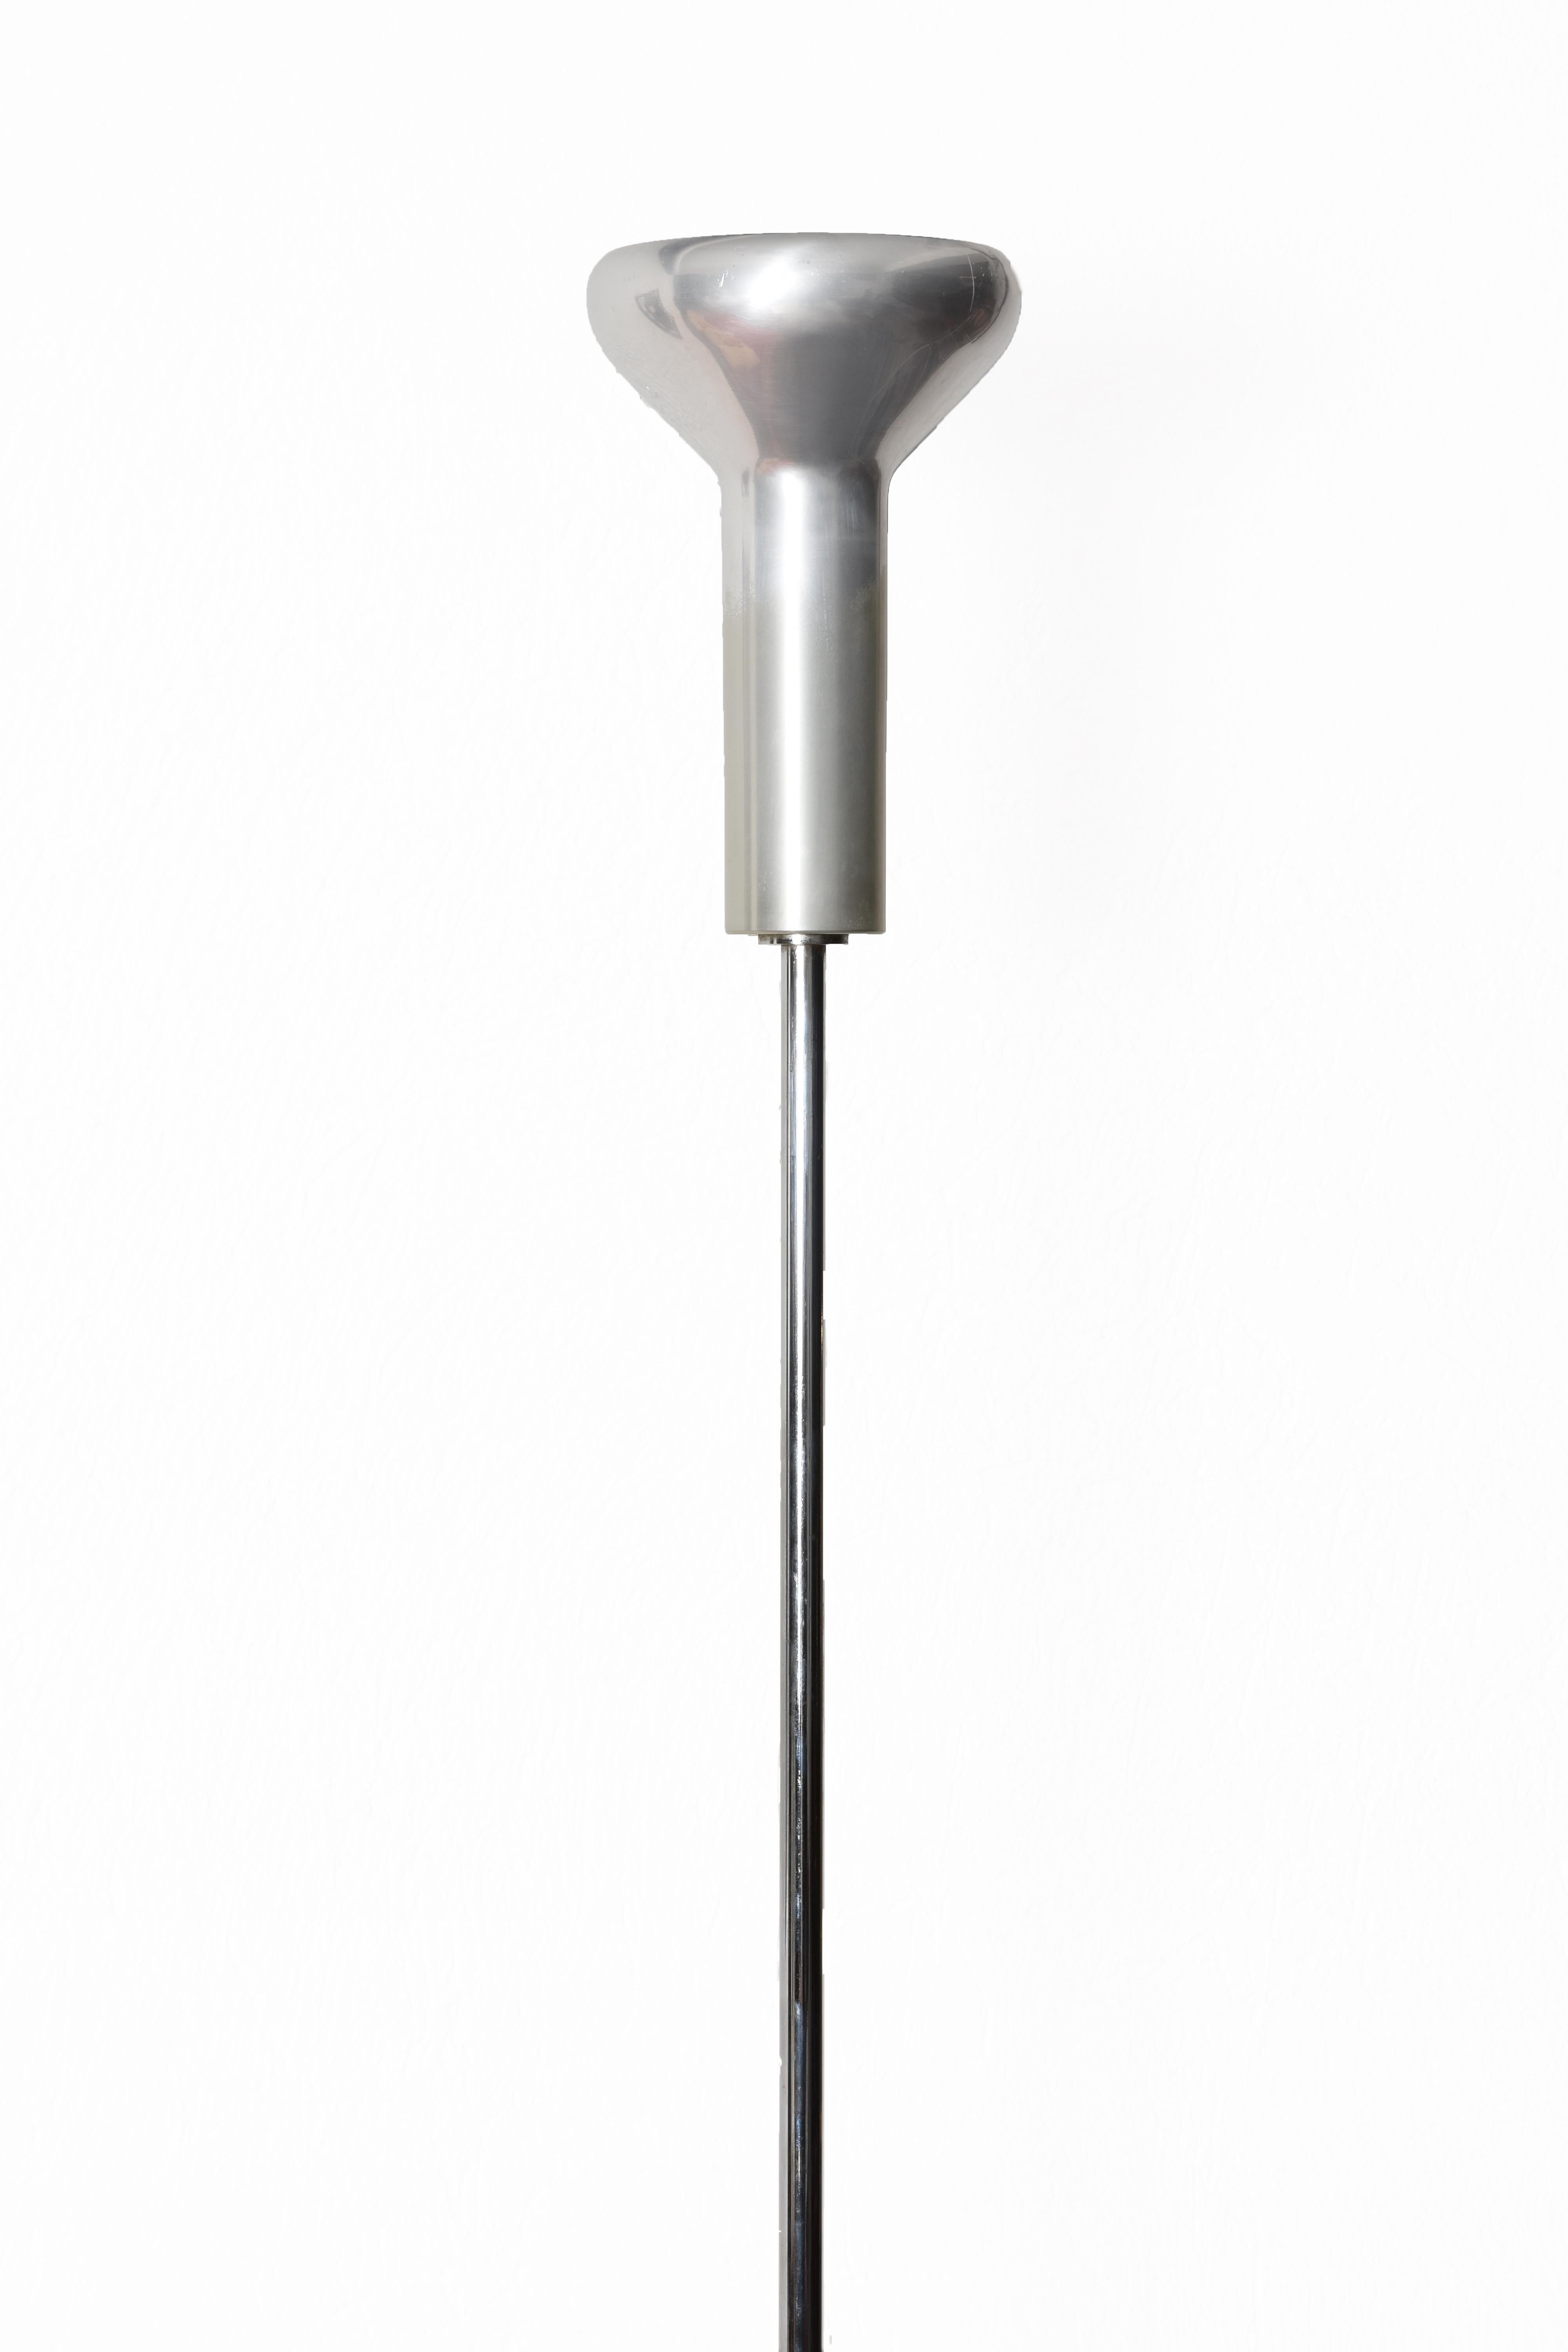 Midcentury Gino Sarfatti Chrome Aluminum Italian 1073 Floor Lamp, Arteluce 1950s 1